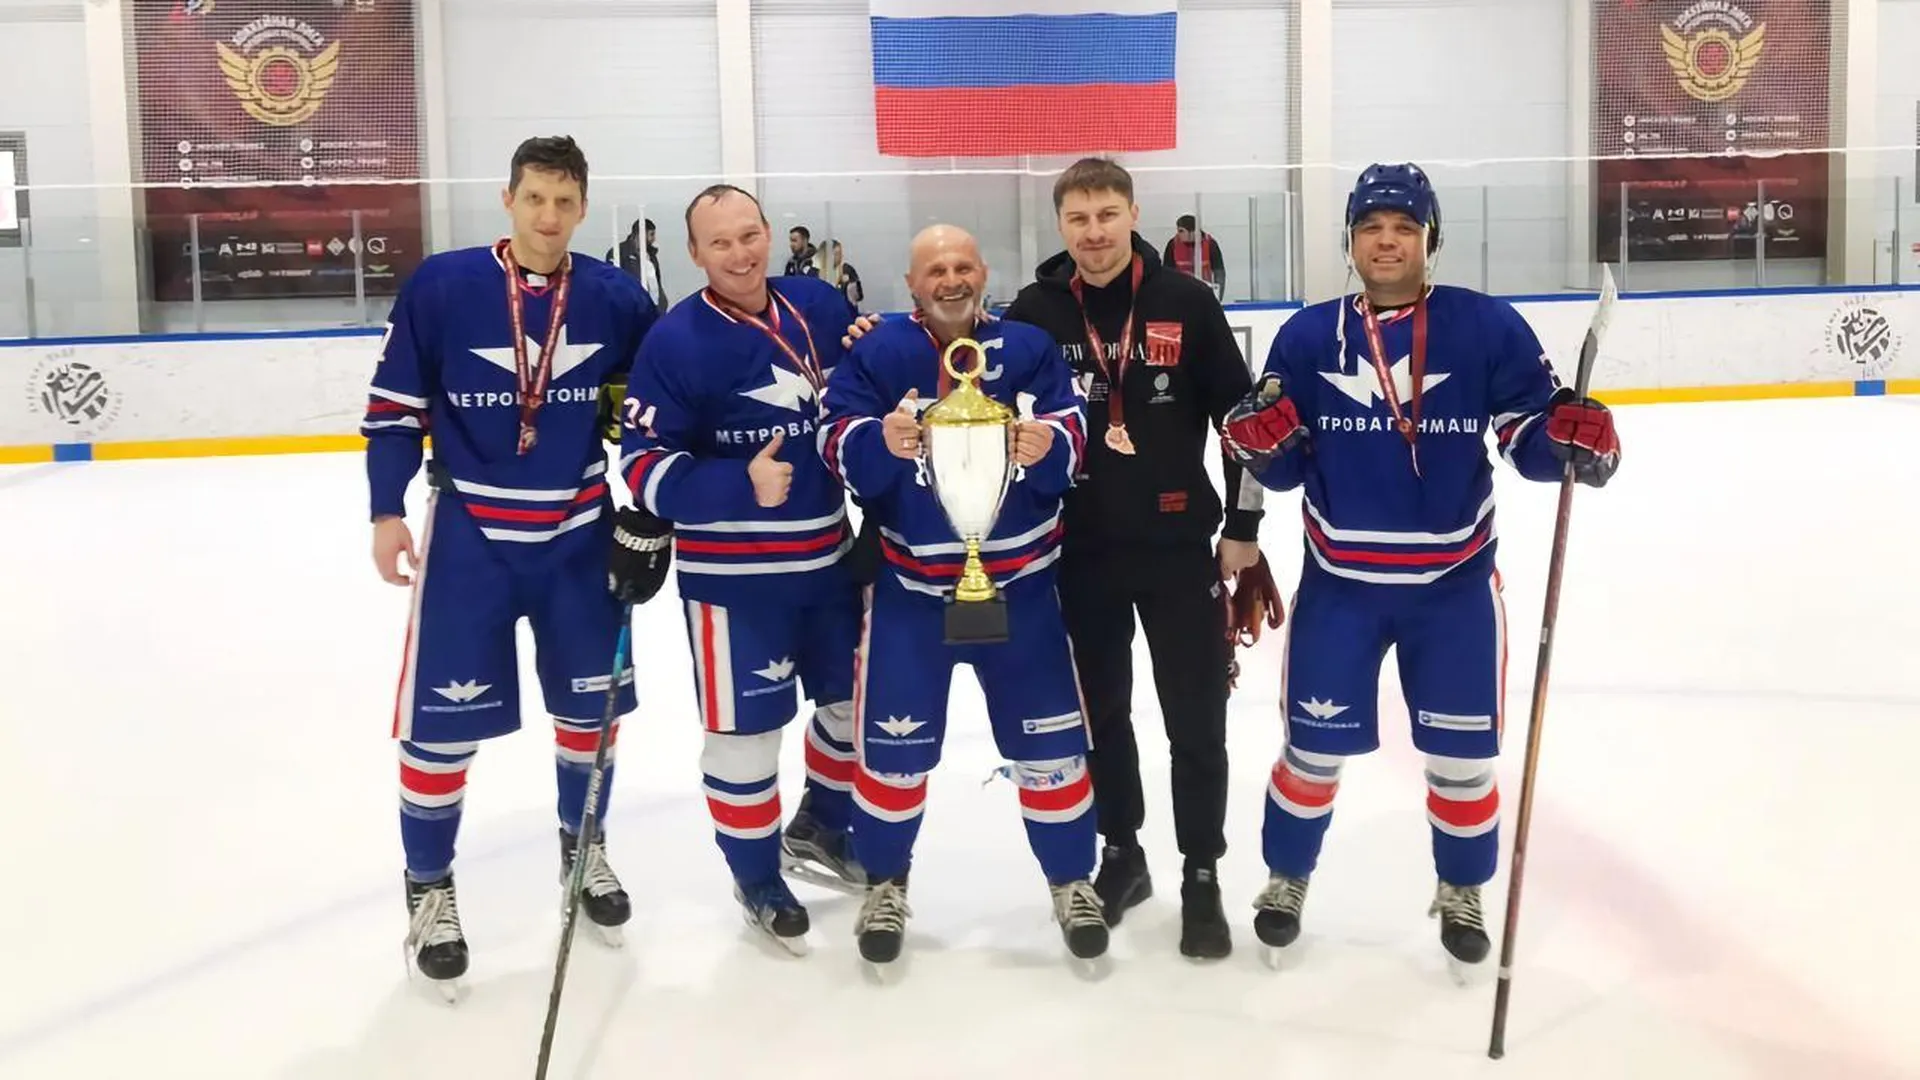 Сотрудники Метровагонмаша Мытищ завоевали бронзу на чемпионате РЖД по хоккею